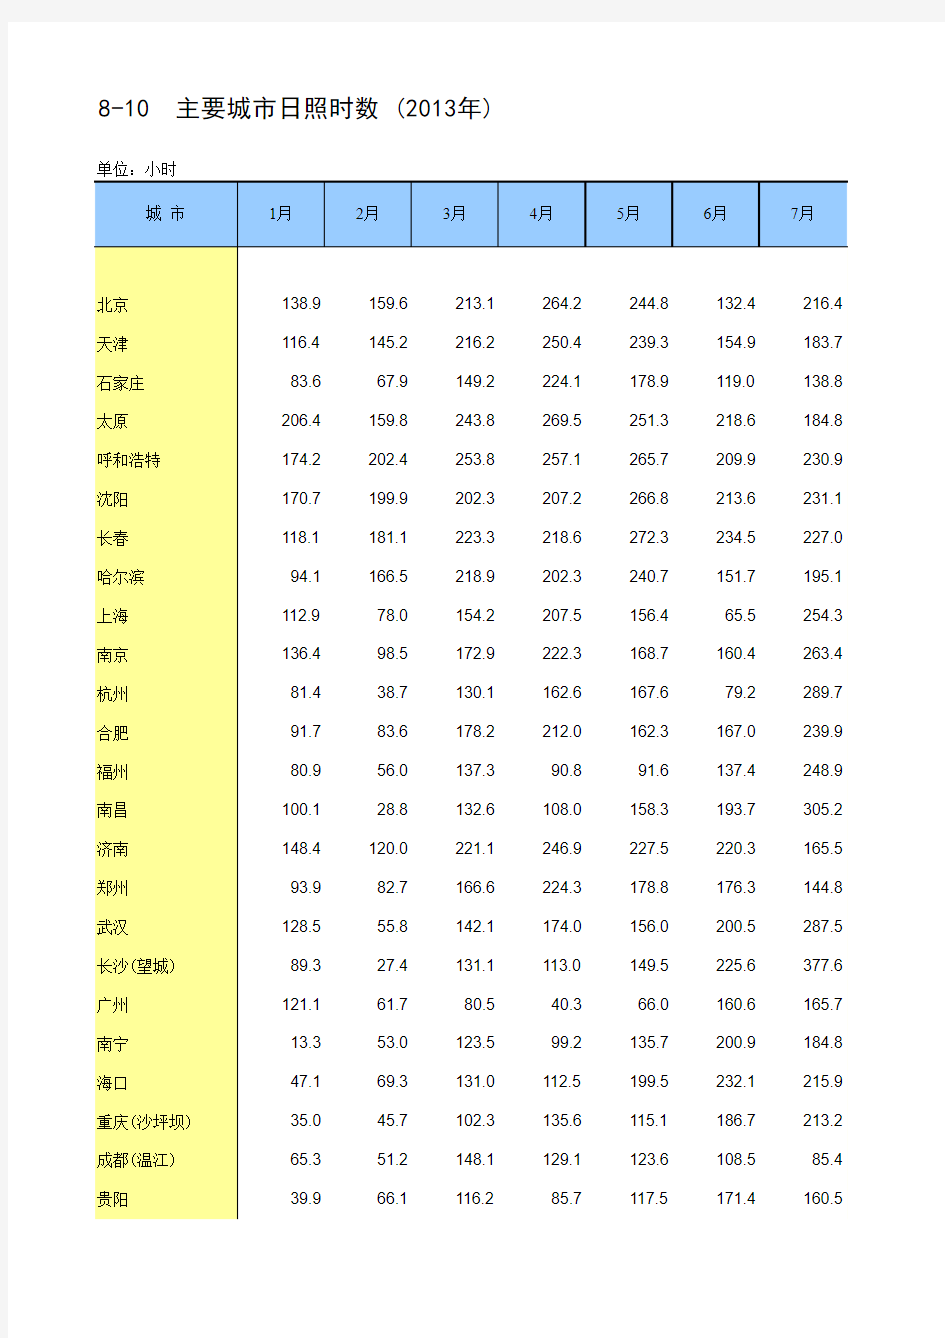 中国统计年鉴2014主要城市日照时数 (2013年)